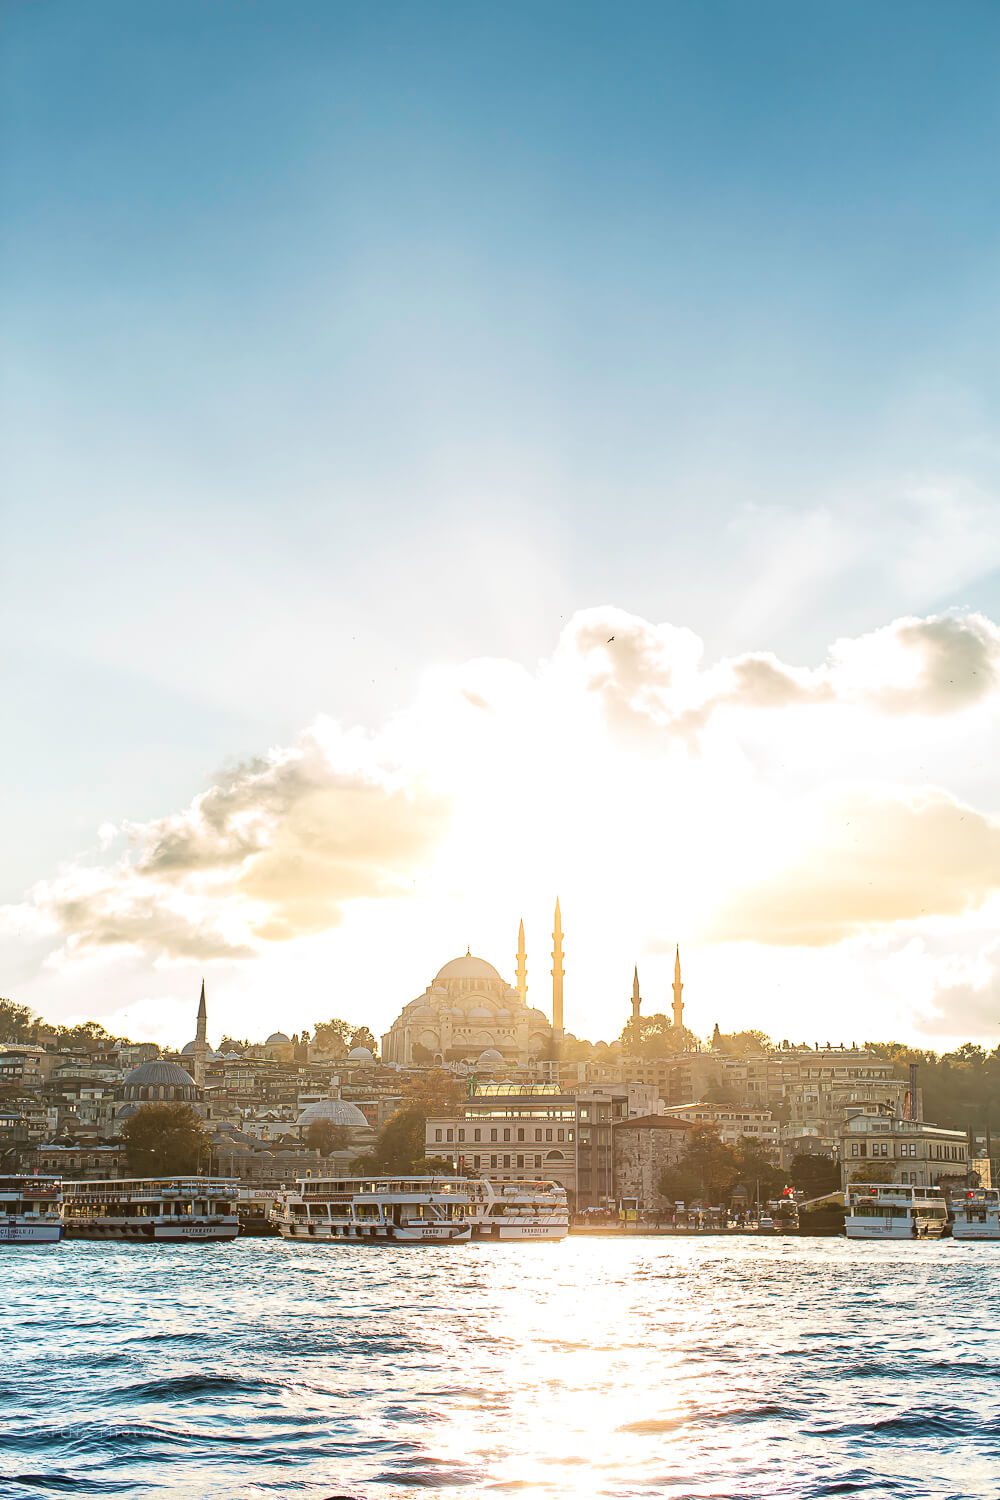 Sunset on the Bosphorus Bridge